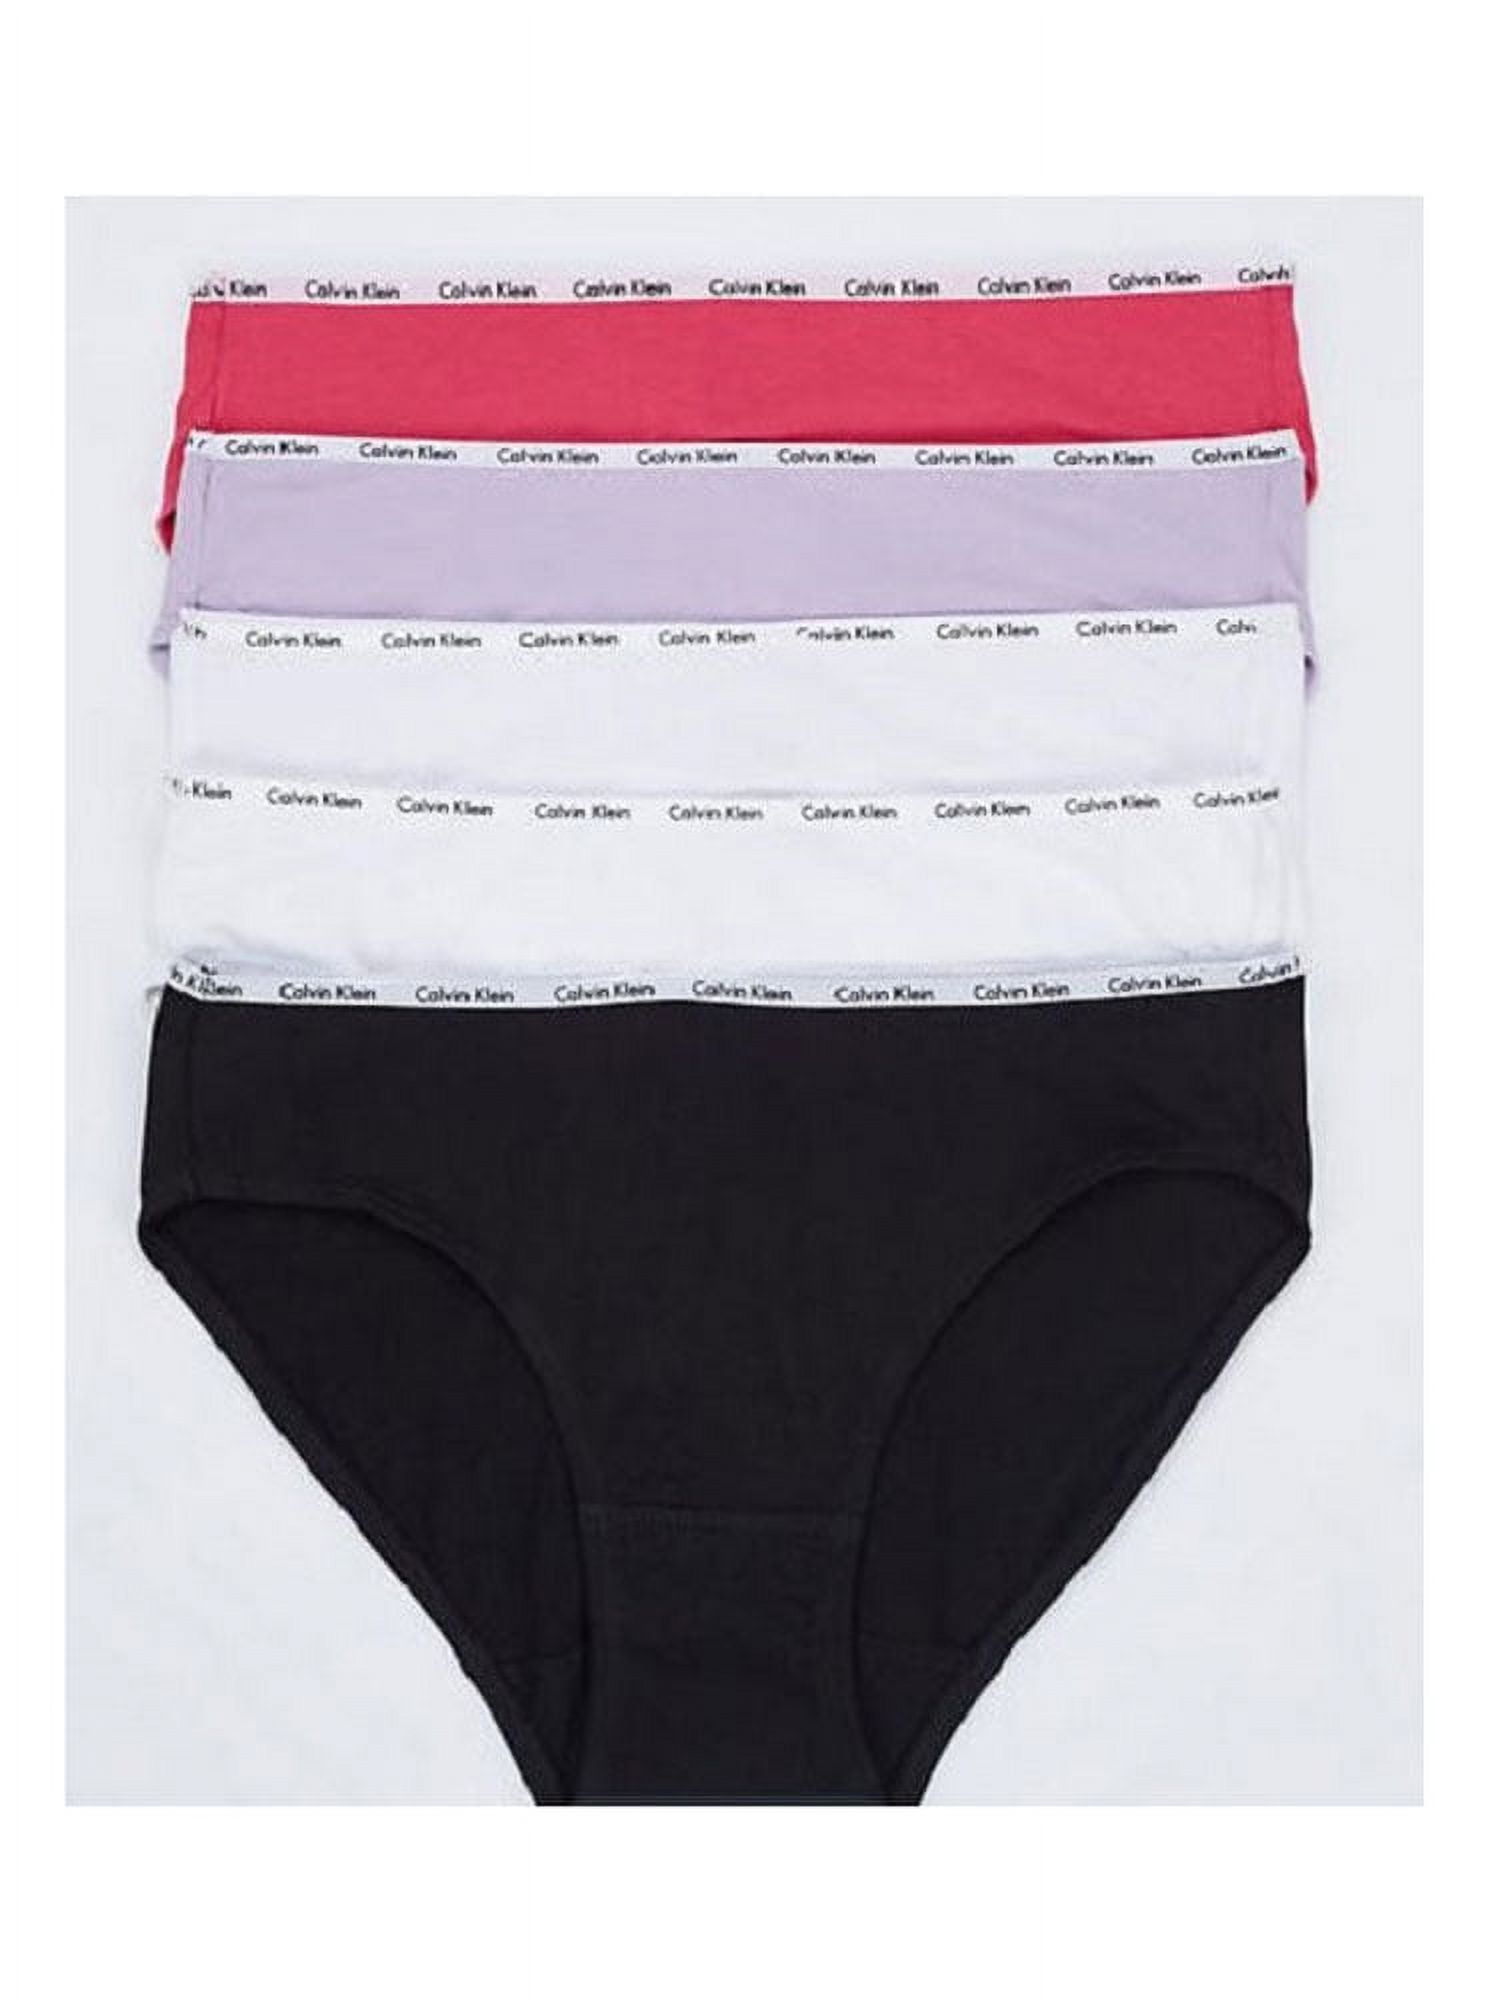 Womens 5 M Pack, Panty Klein Bikini Logo Cotton Stretch Calvin Black/White/Grey,